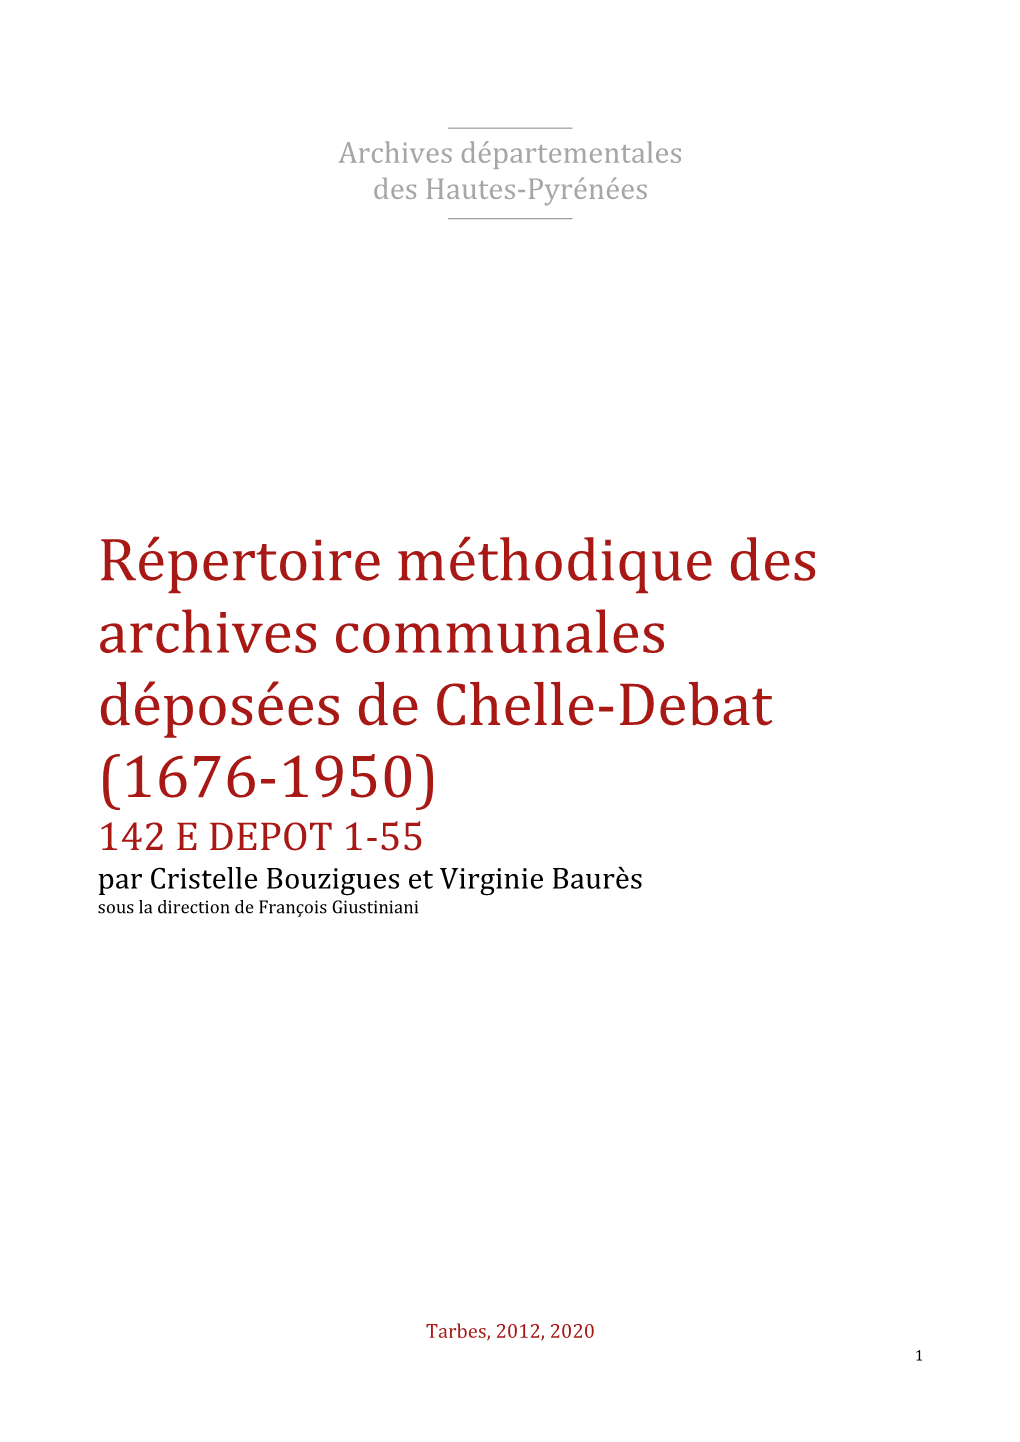 Répertoire Des Archives Déposées De Chelle-Debat